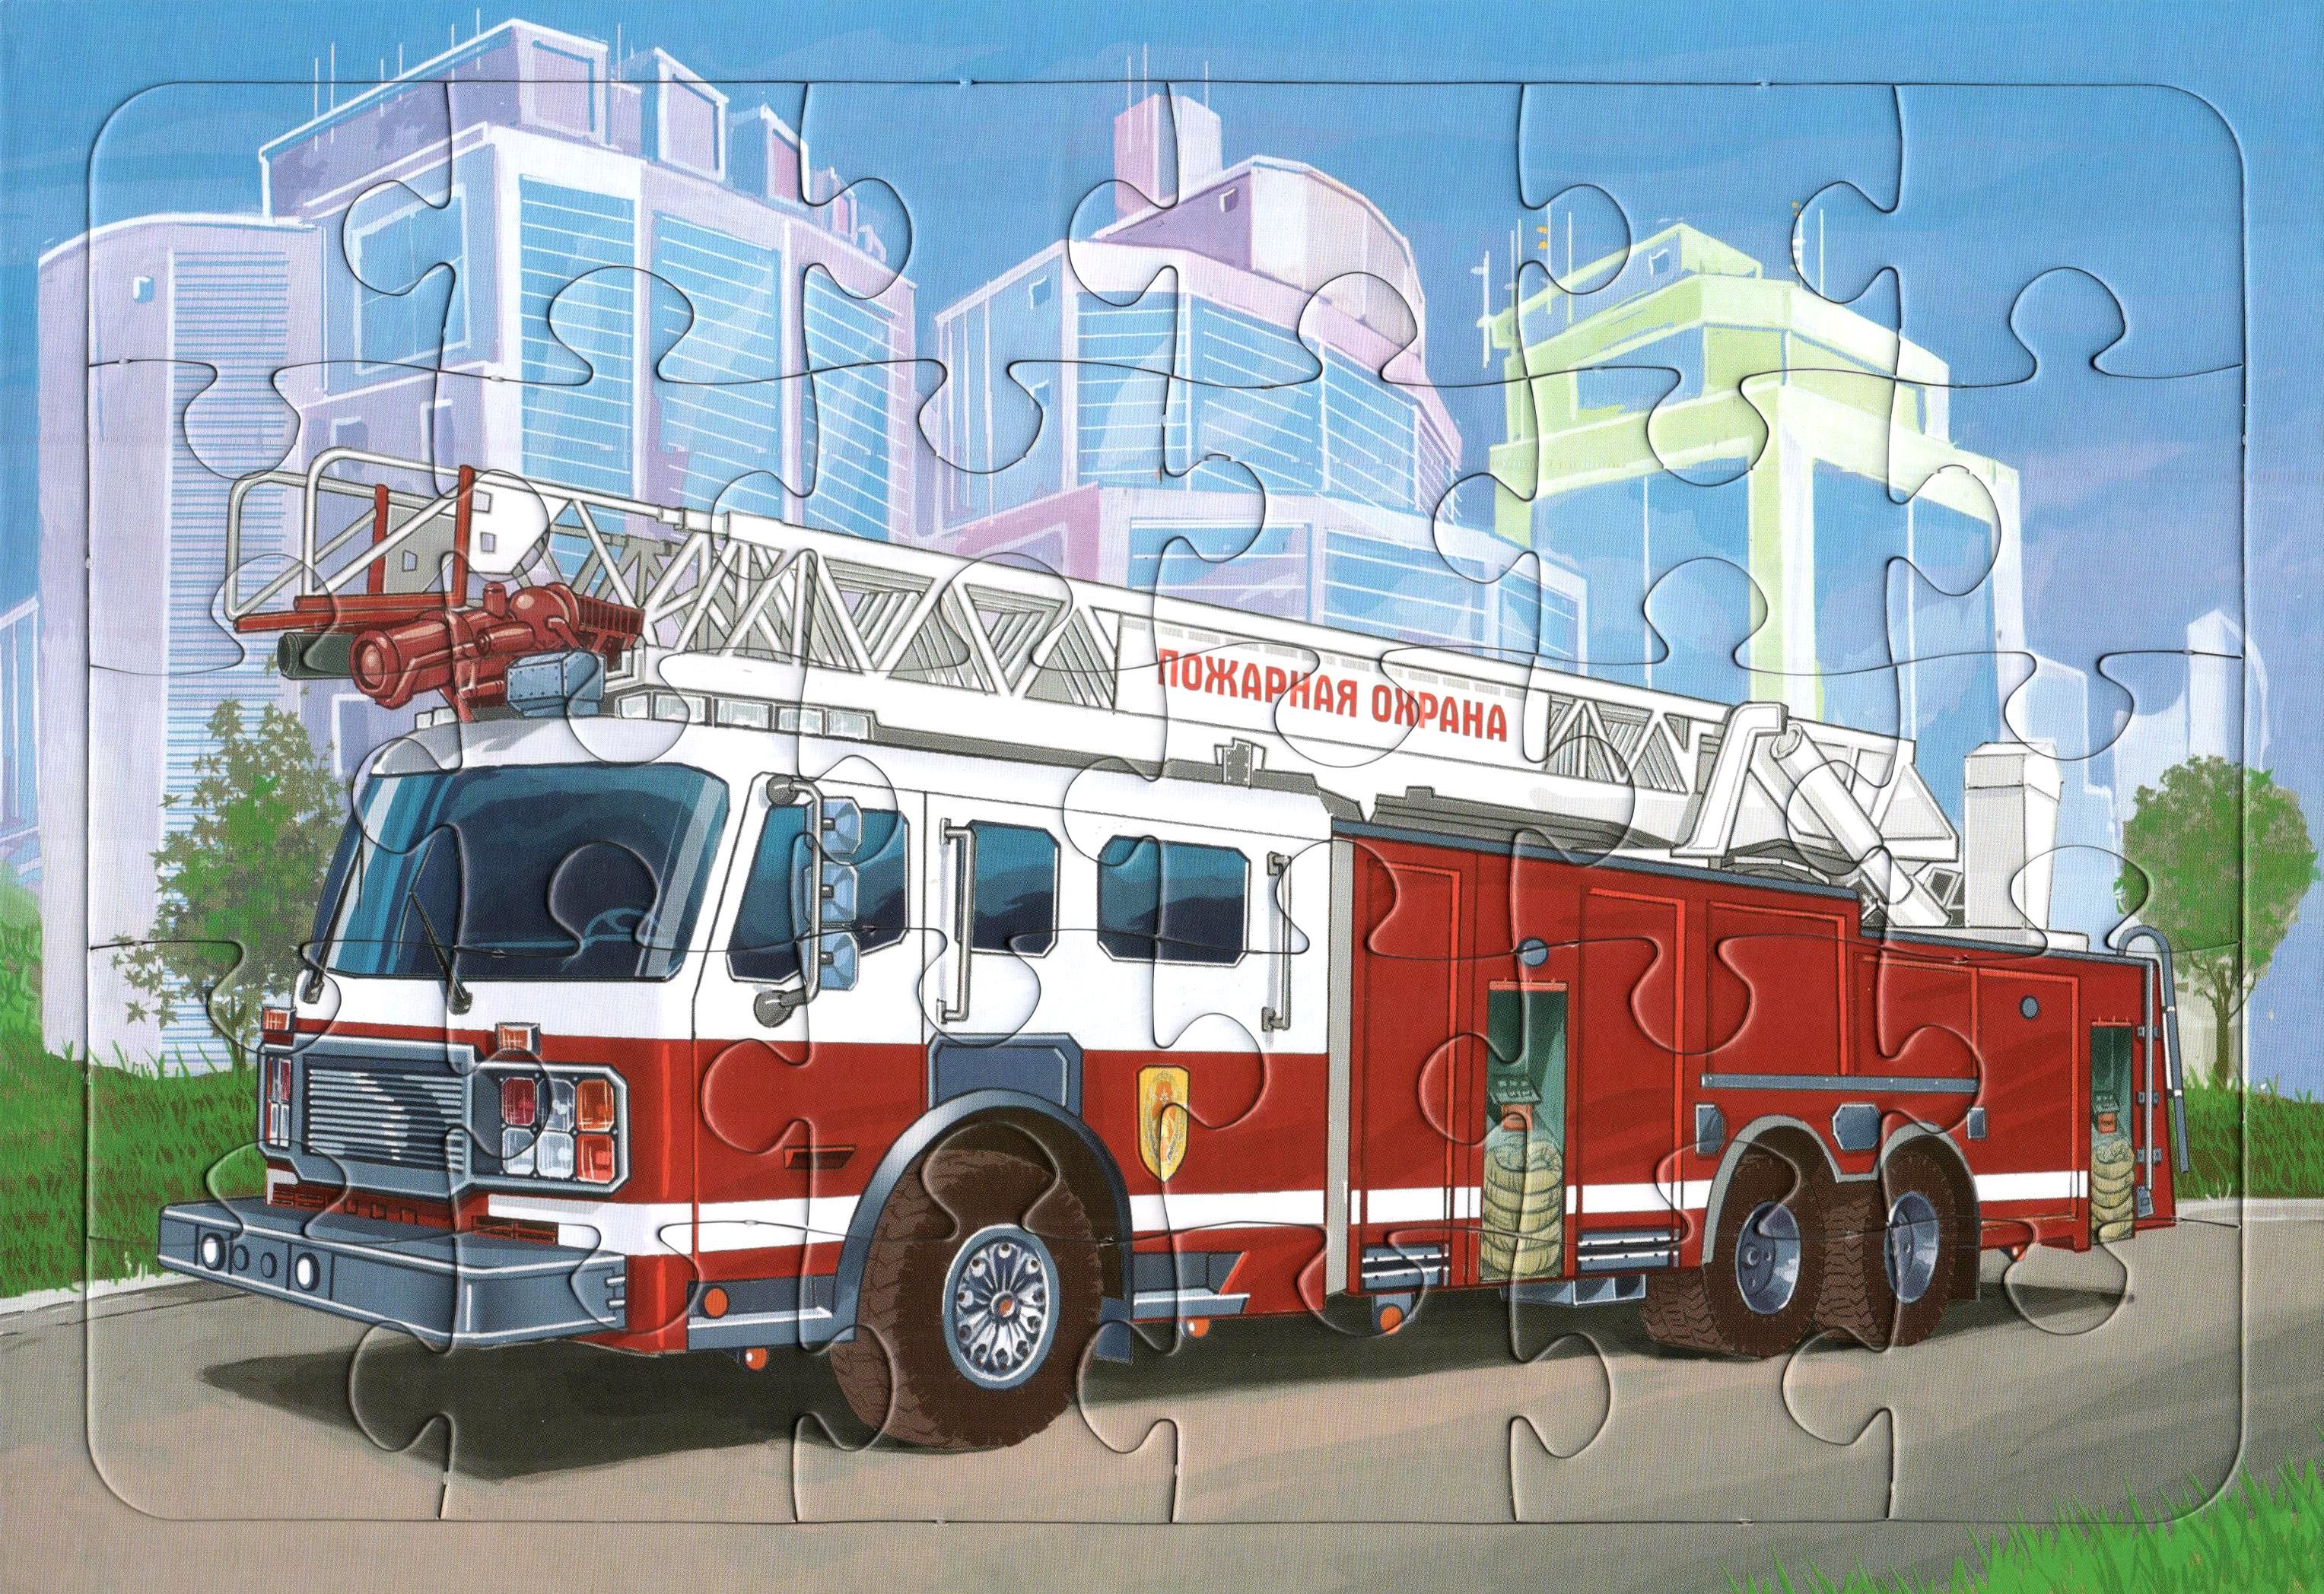 Castorland Puzzle пожарная машина